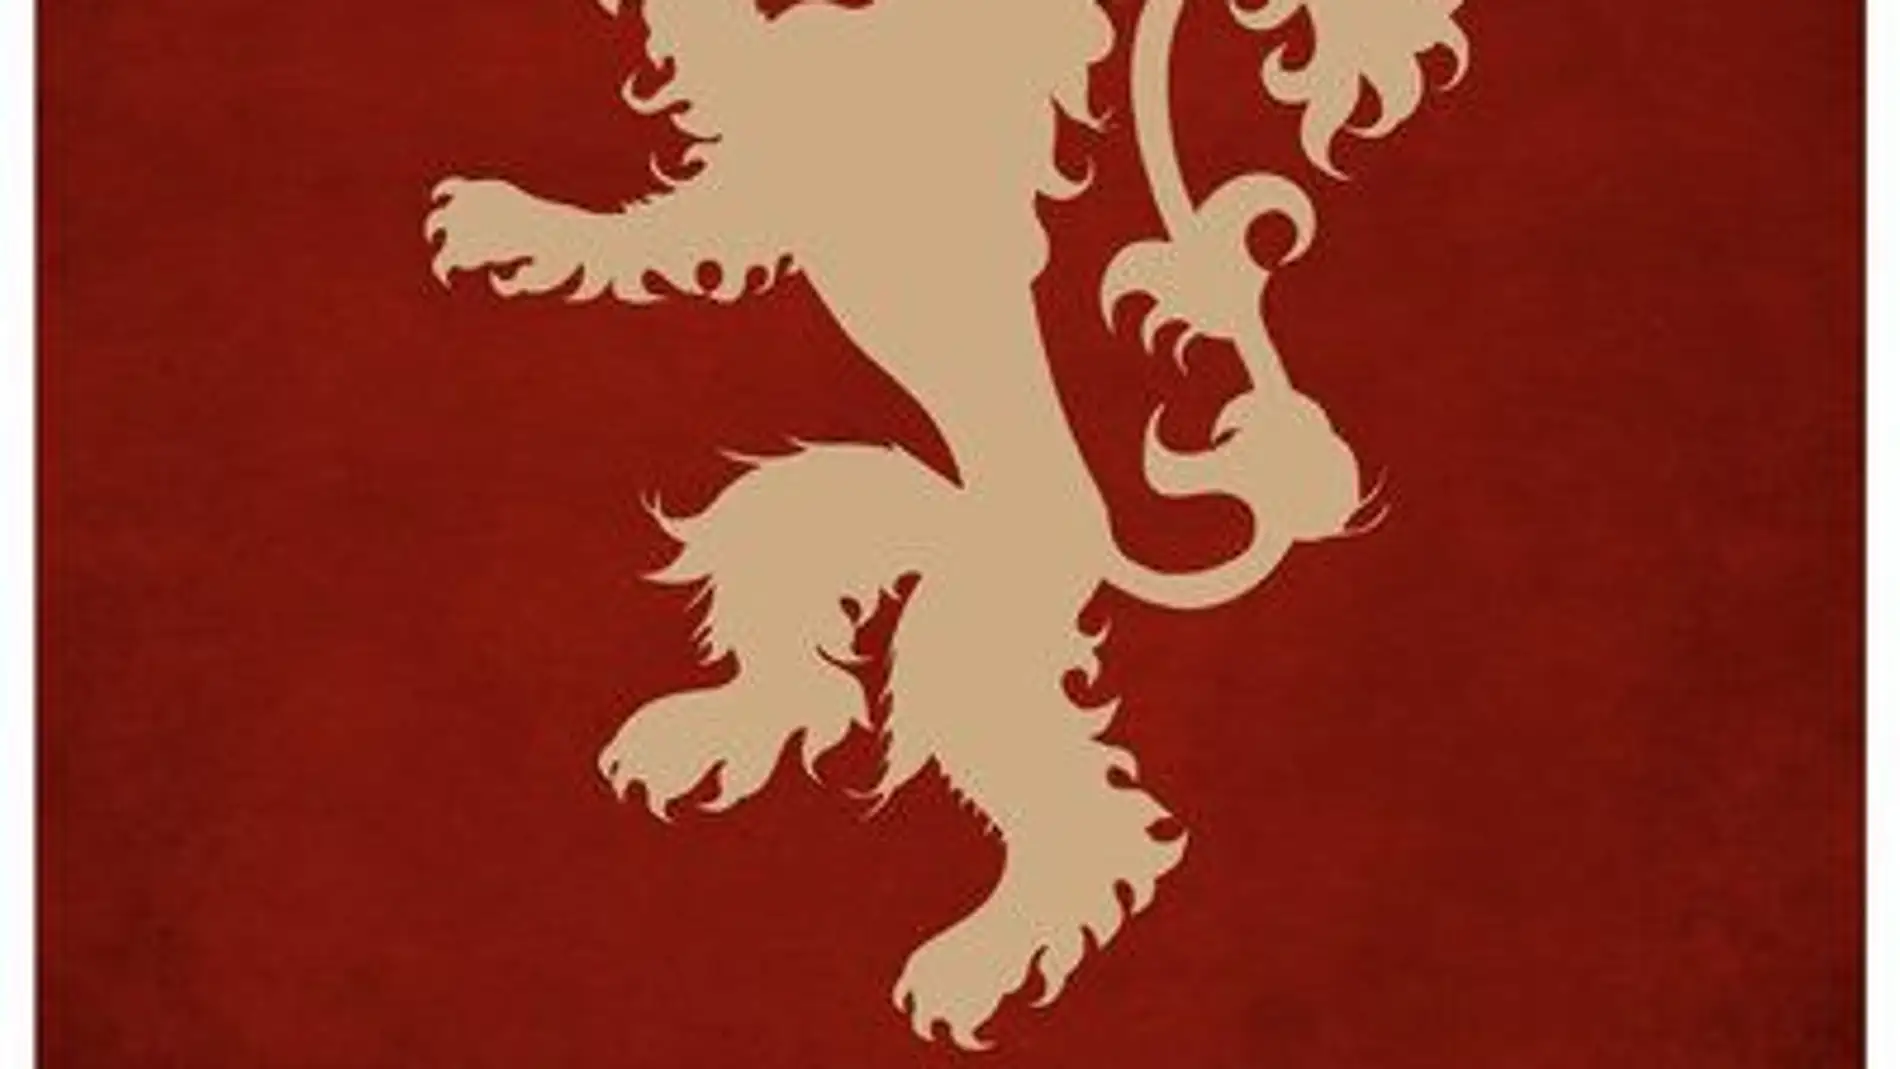 A pesar de la fiereza del león rampante de los Lannister, poco podría hacer contra un dragón de los Targaryen